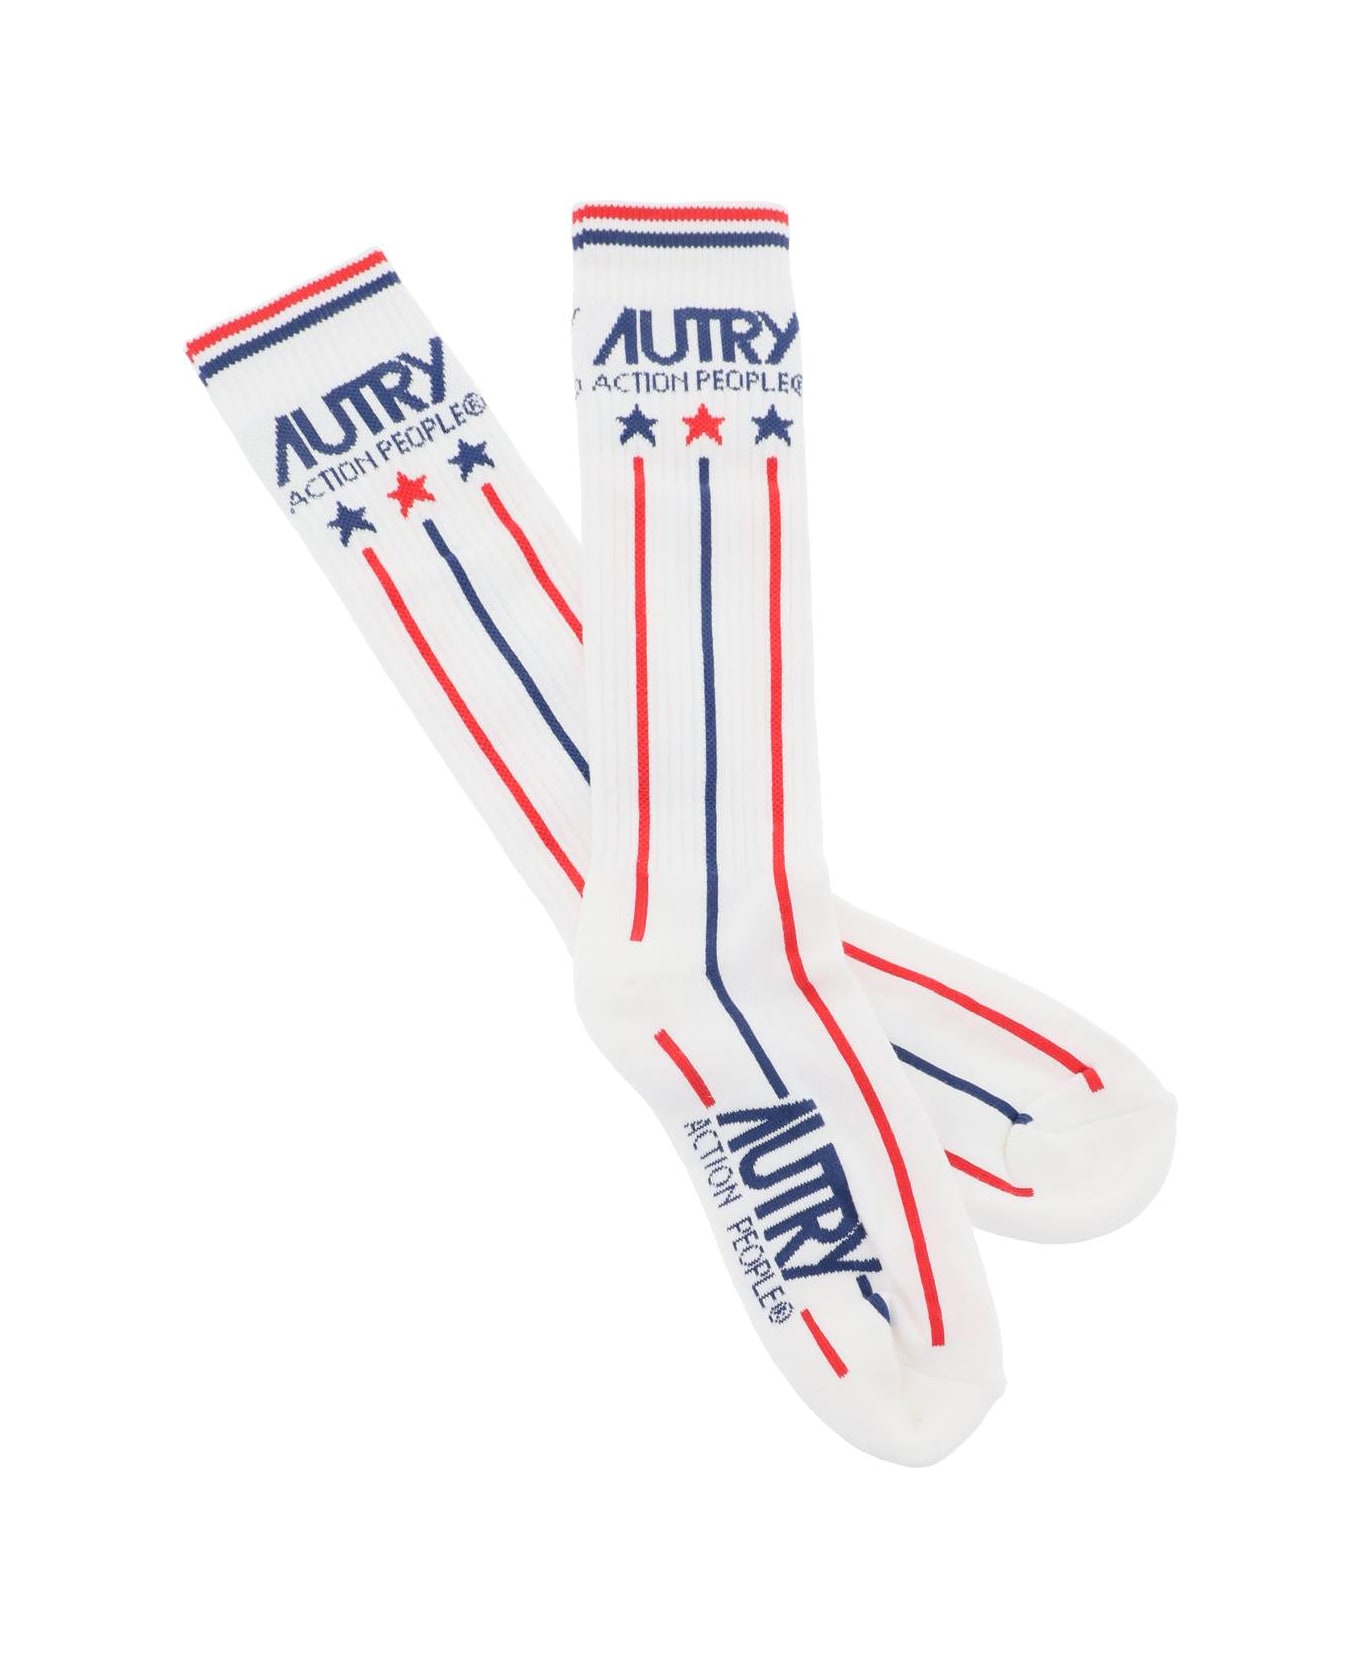 Autry Tennis Socks - RED STR (White)